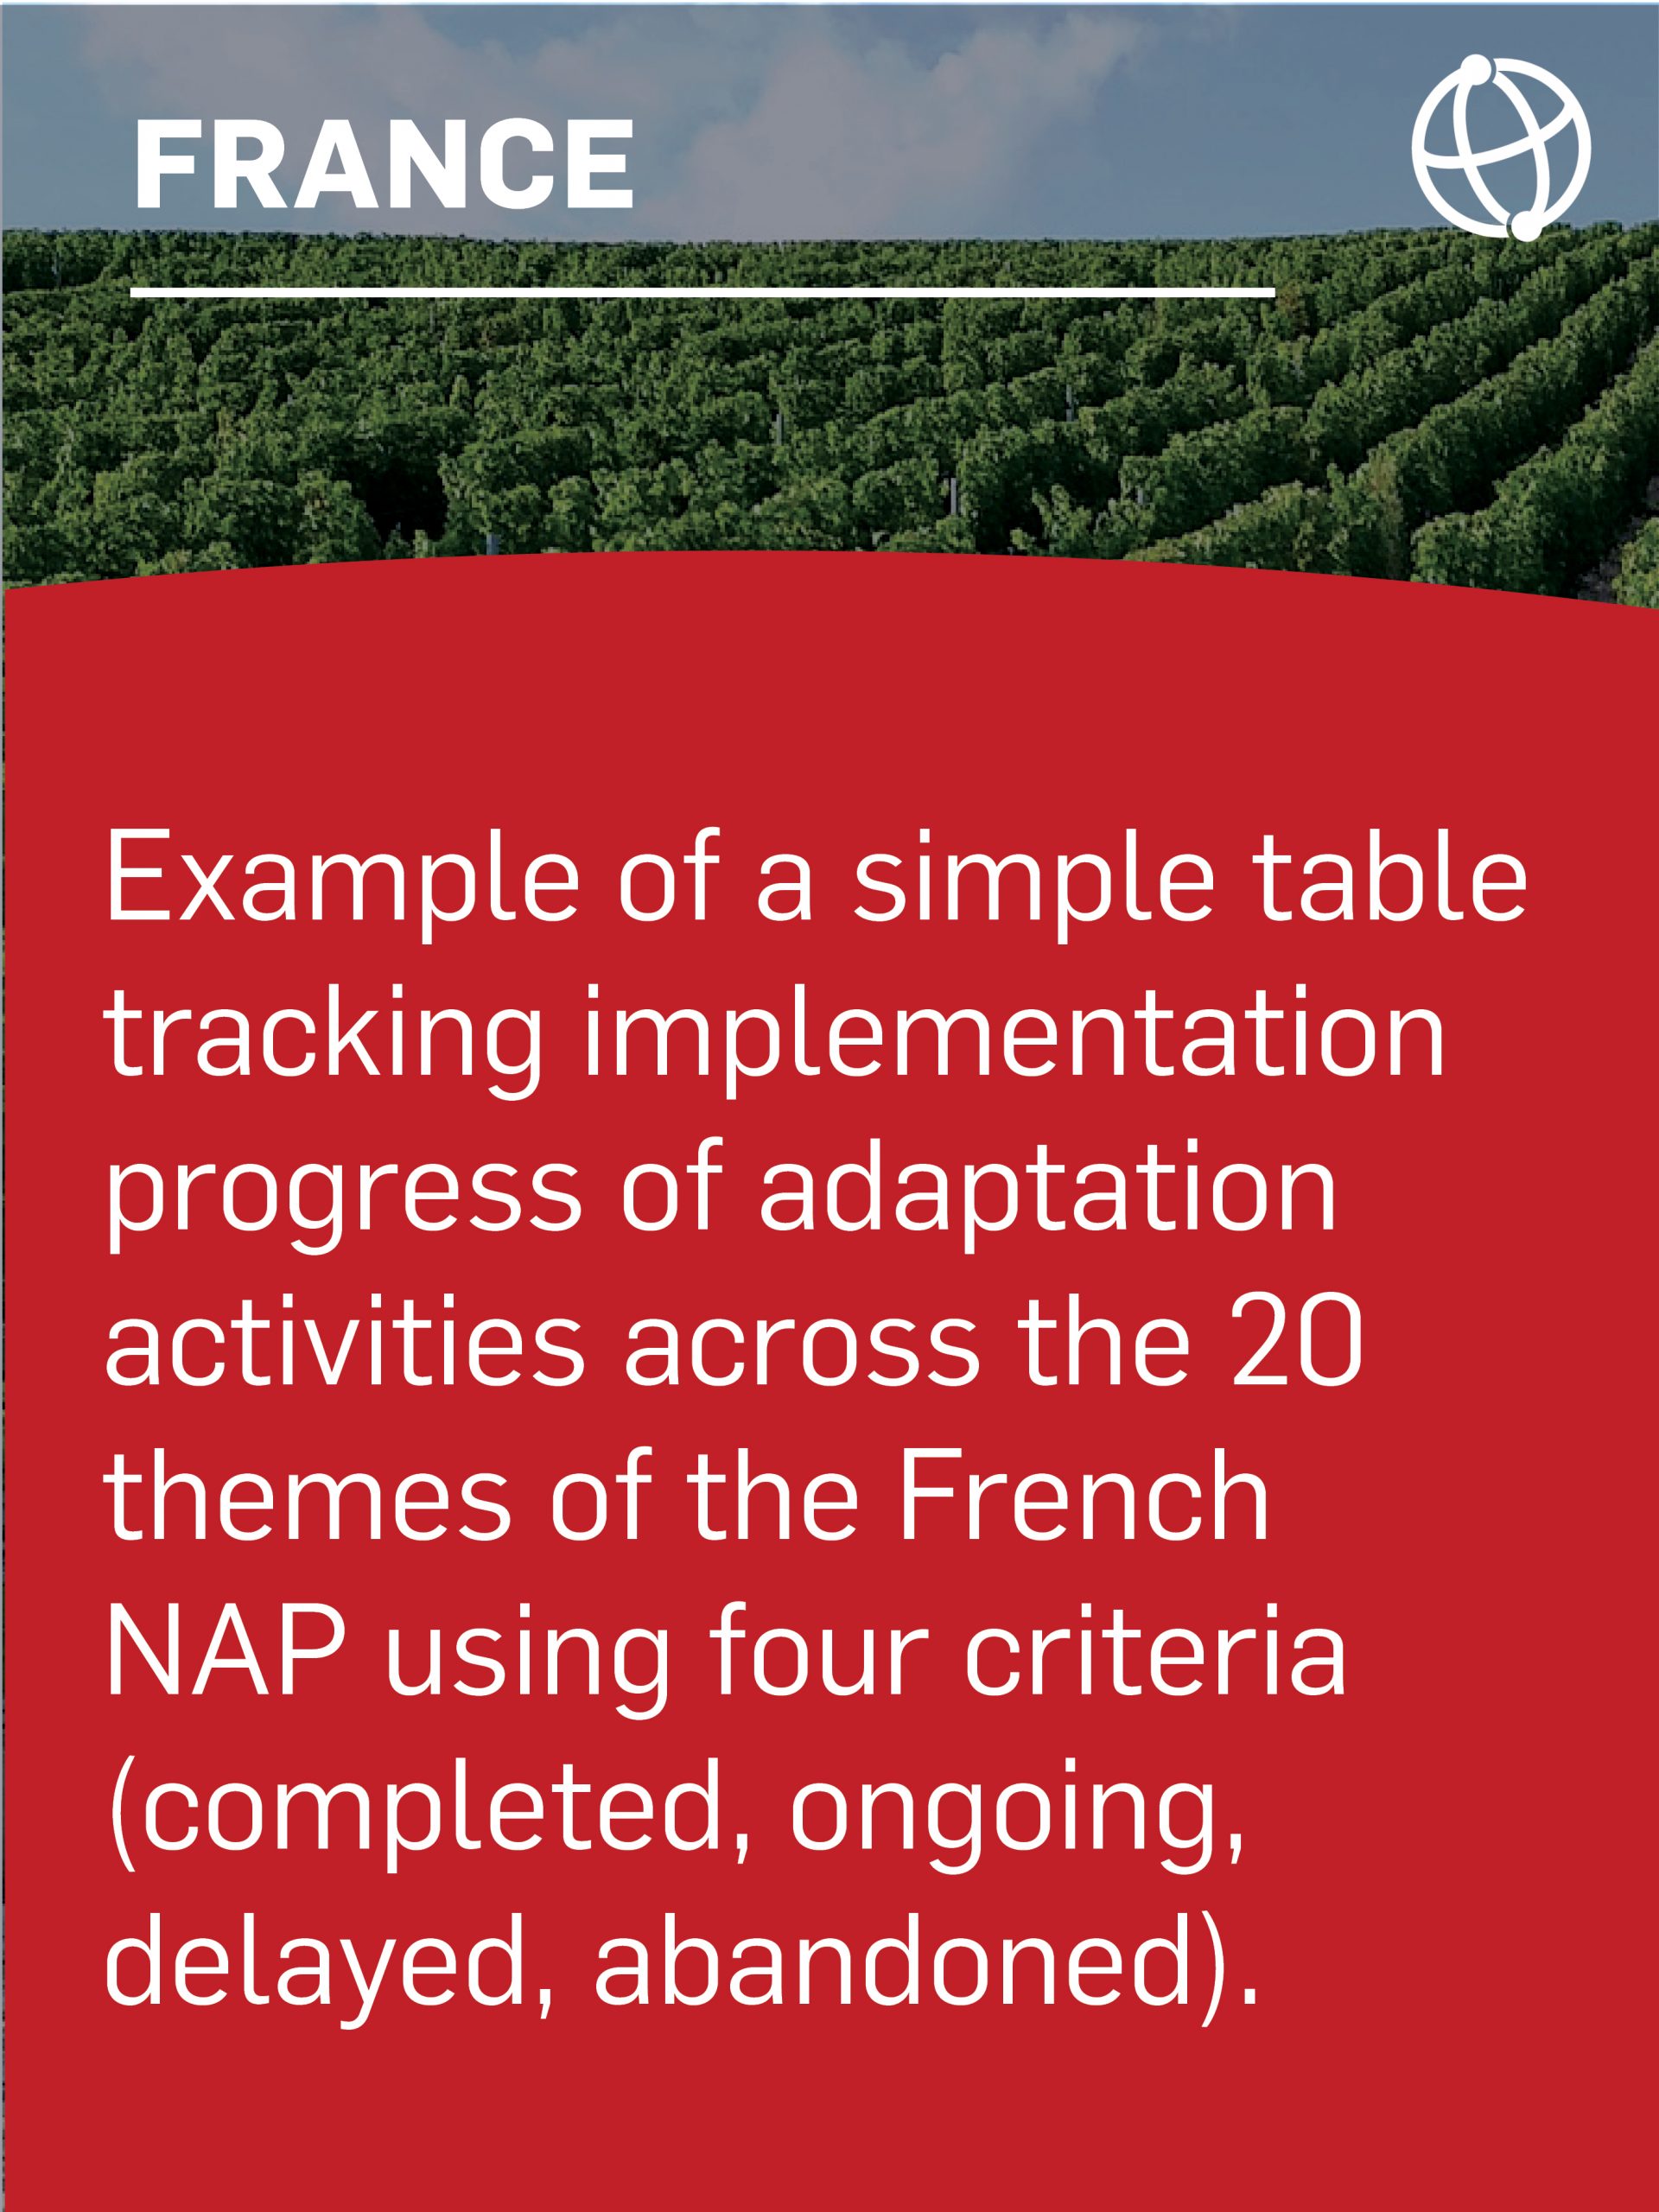 Exemple de tableau simple retraçant l'avancement de la mise en œuvre des activités d'adaptation à travers les 20 thèmes du PAN français en utilisant quatre critères (achevé, en cours, retardé, abandonné).